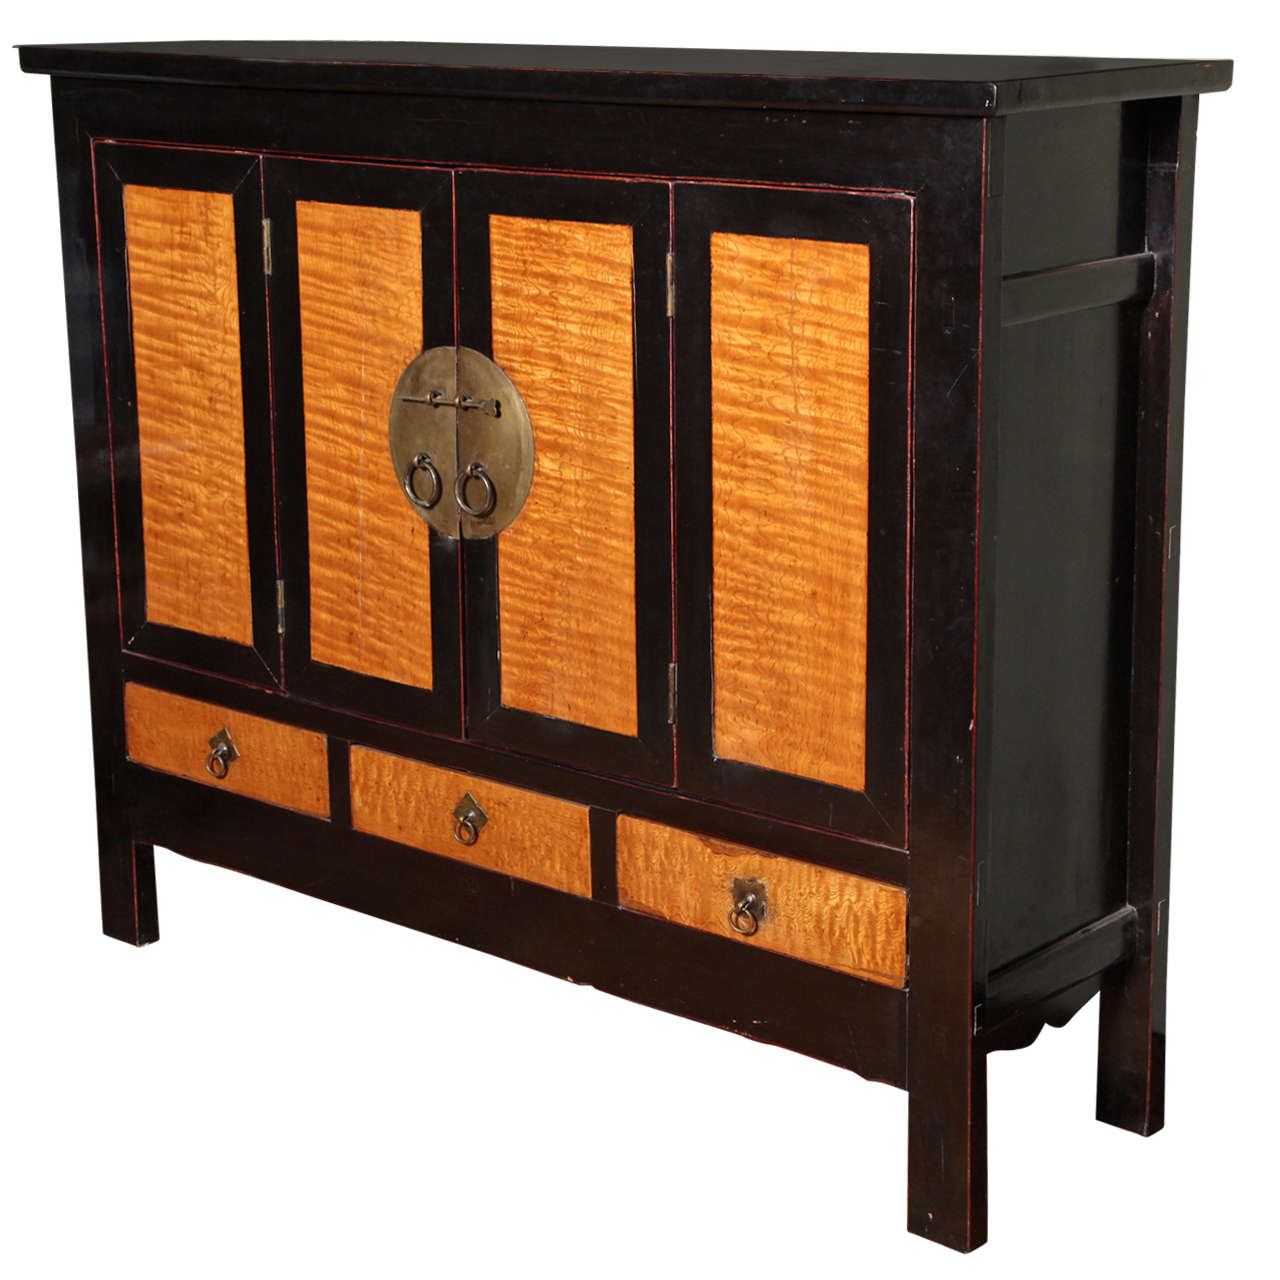 Meuble de rangement en laque noire et ronce de bois de la fin de la dynastie Qing avec portes accordéon